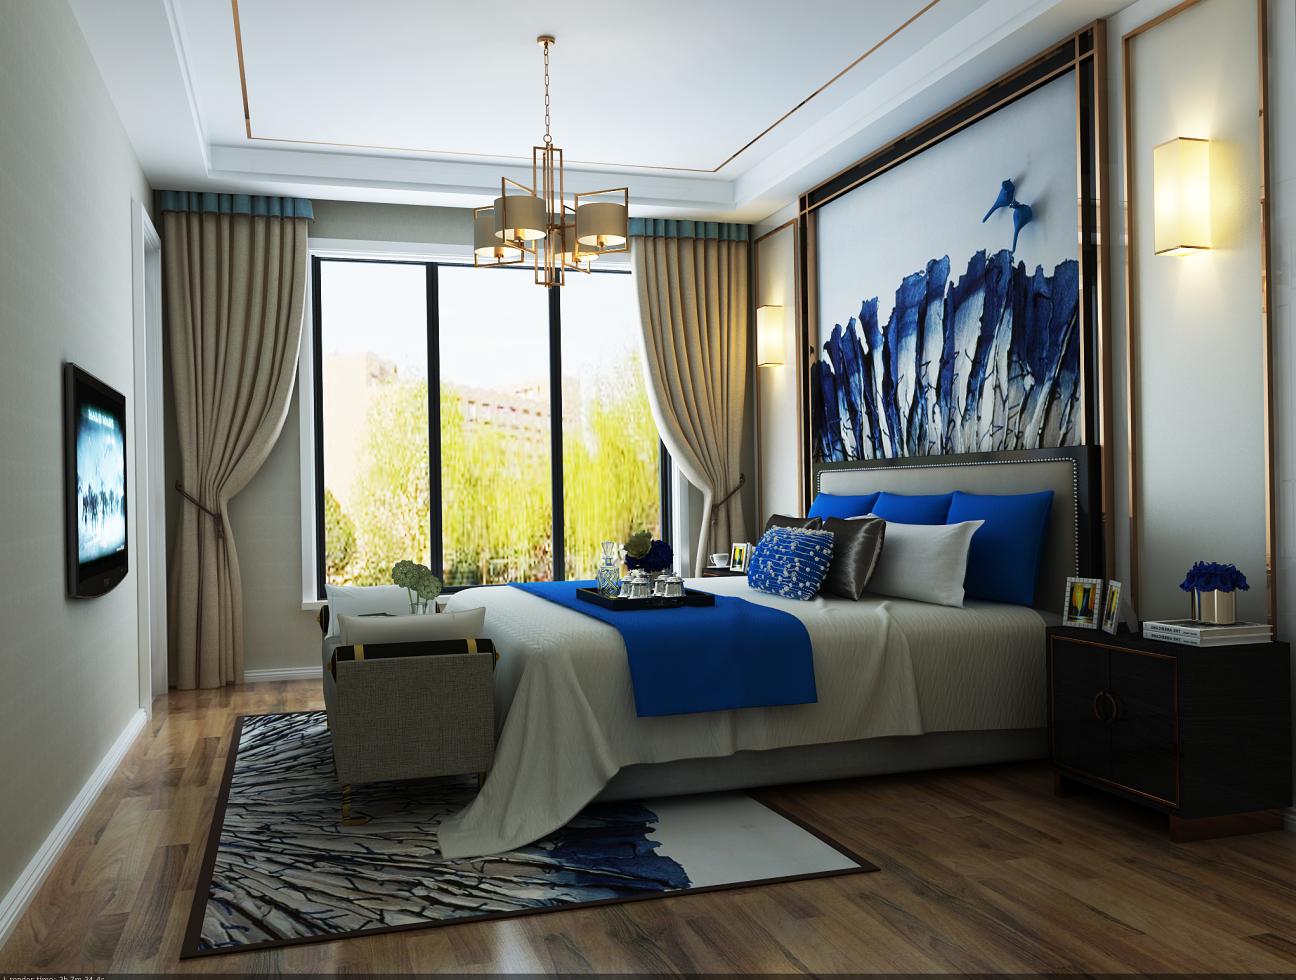 金地格林 白金院邸 别墅装修 新古典风格 腾龙设计 卧室图片来自腾龙设计在金地格林白金院邸别墅设计项目的分享